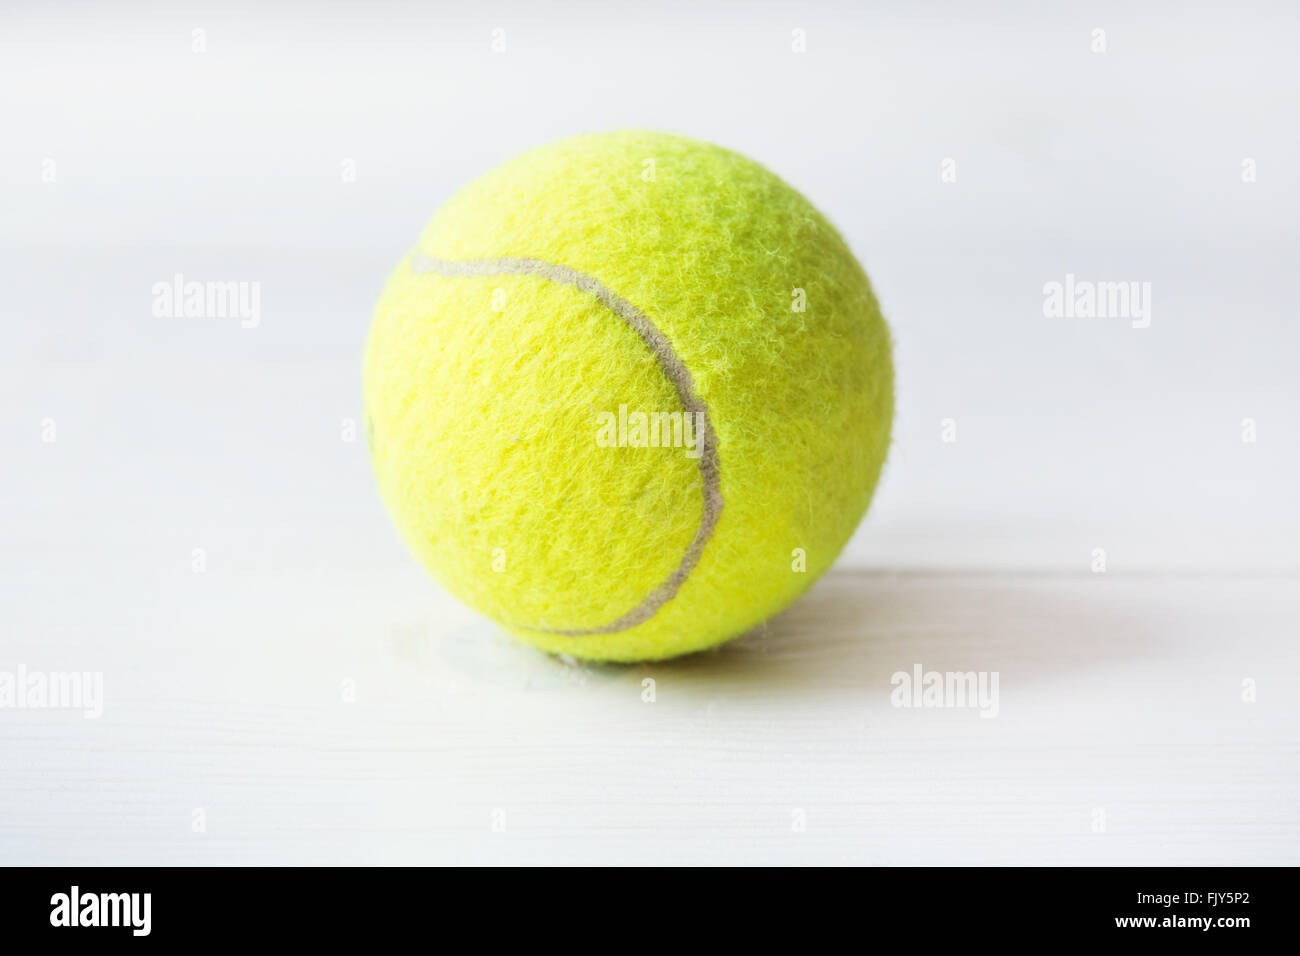 Balle de tennis sur un fond blanc Banque D'Images